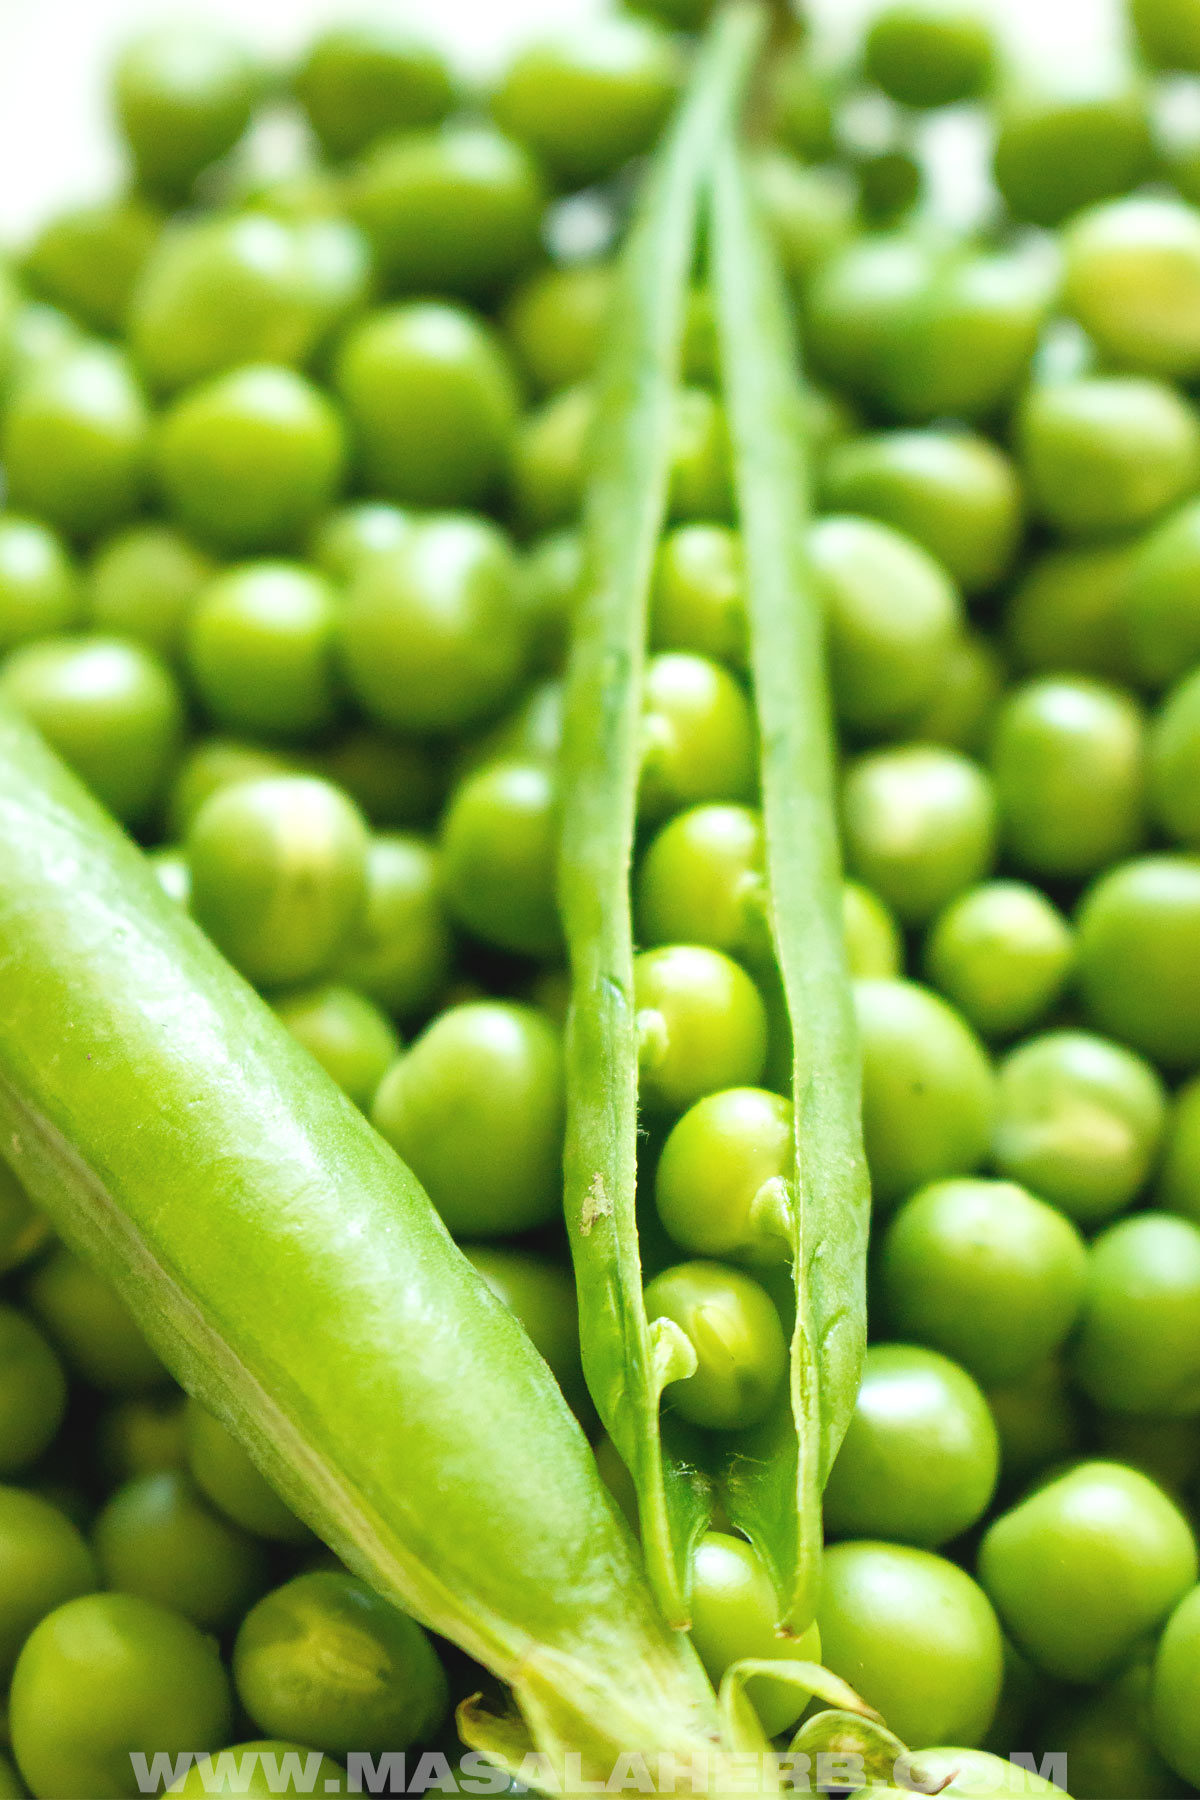 garden-fresh green peas